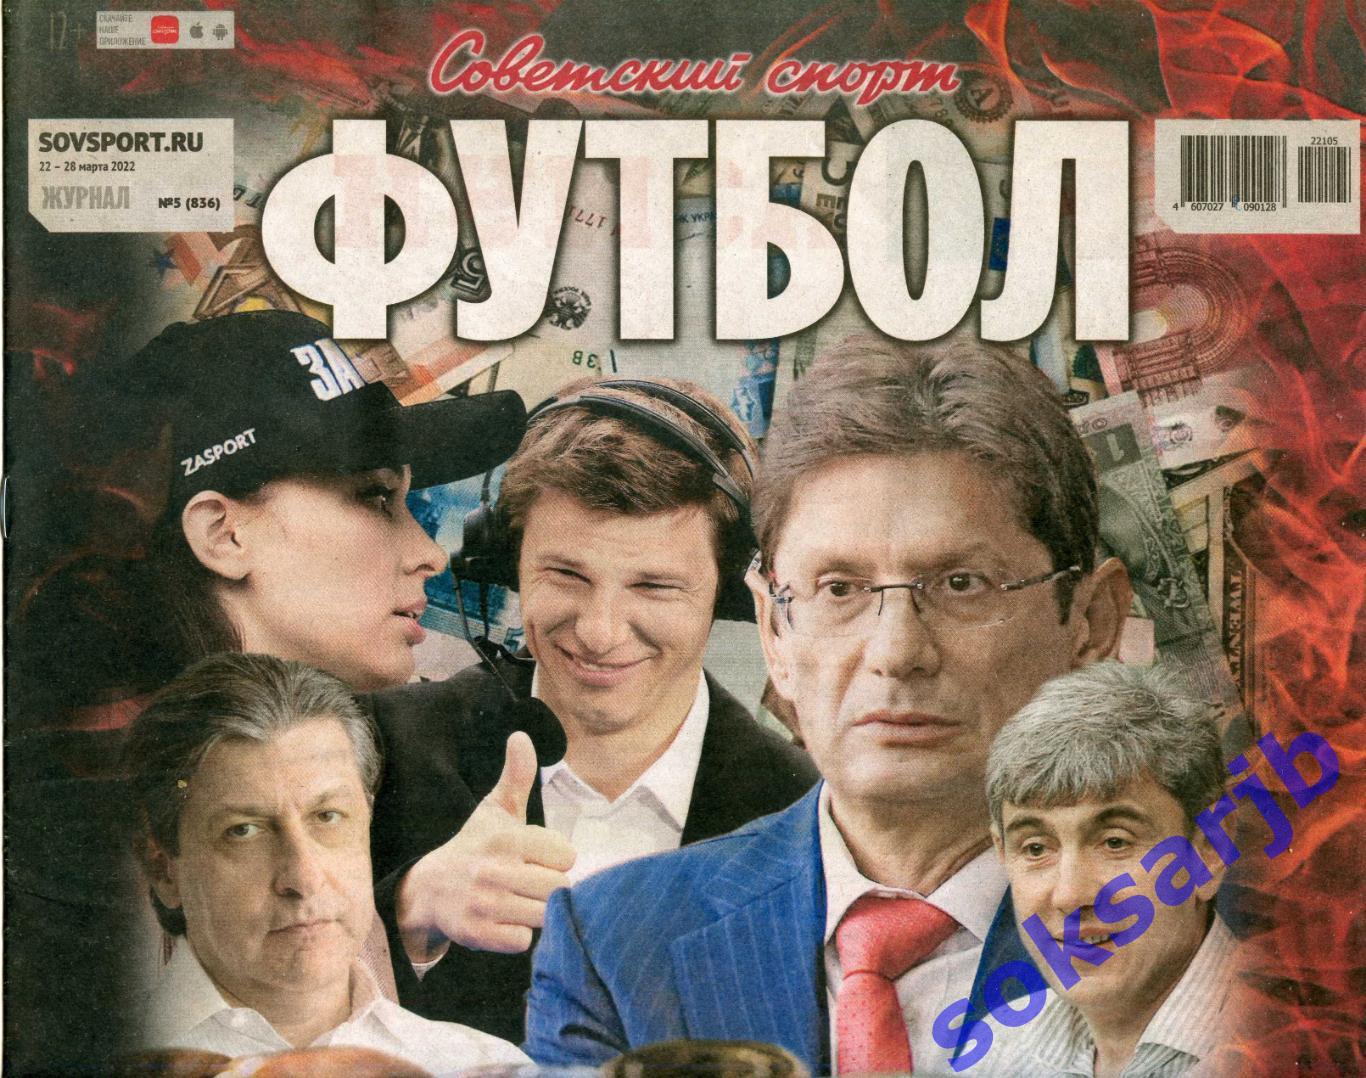 2022. Еженедельник Советский спорт - Футбол № 5 (836).